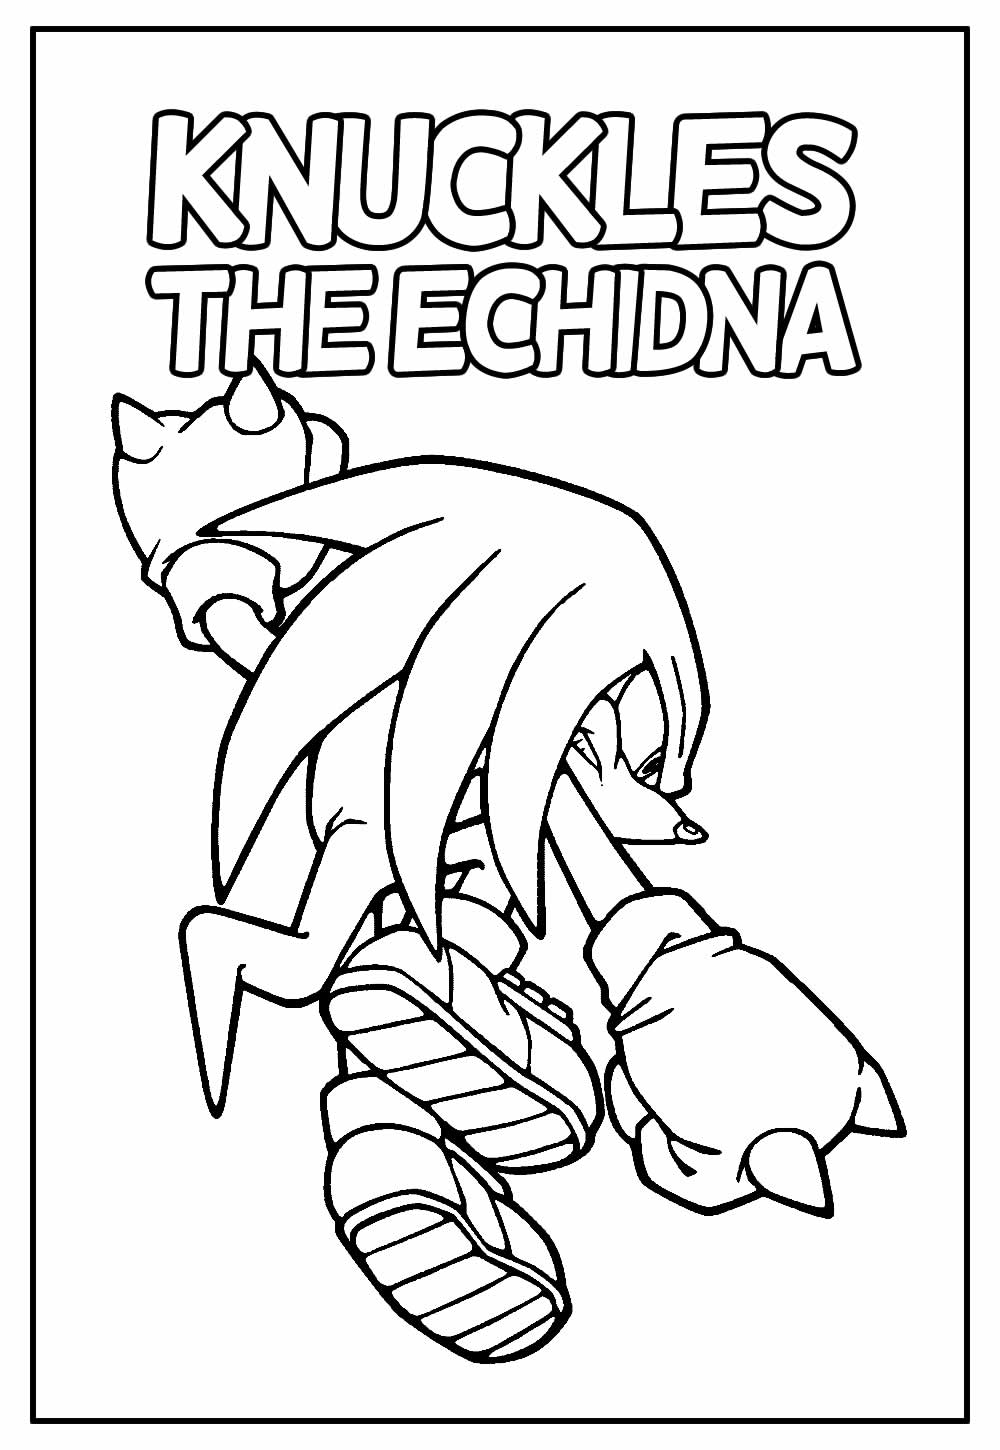 59 Desenhos do Sonic para Colorir em Casa [GRÁTIS]